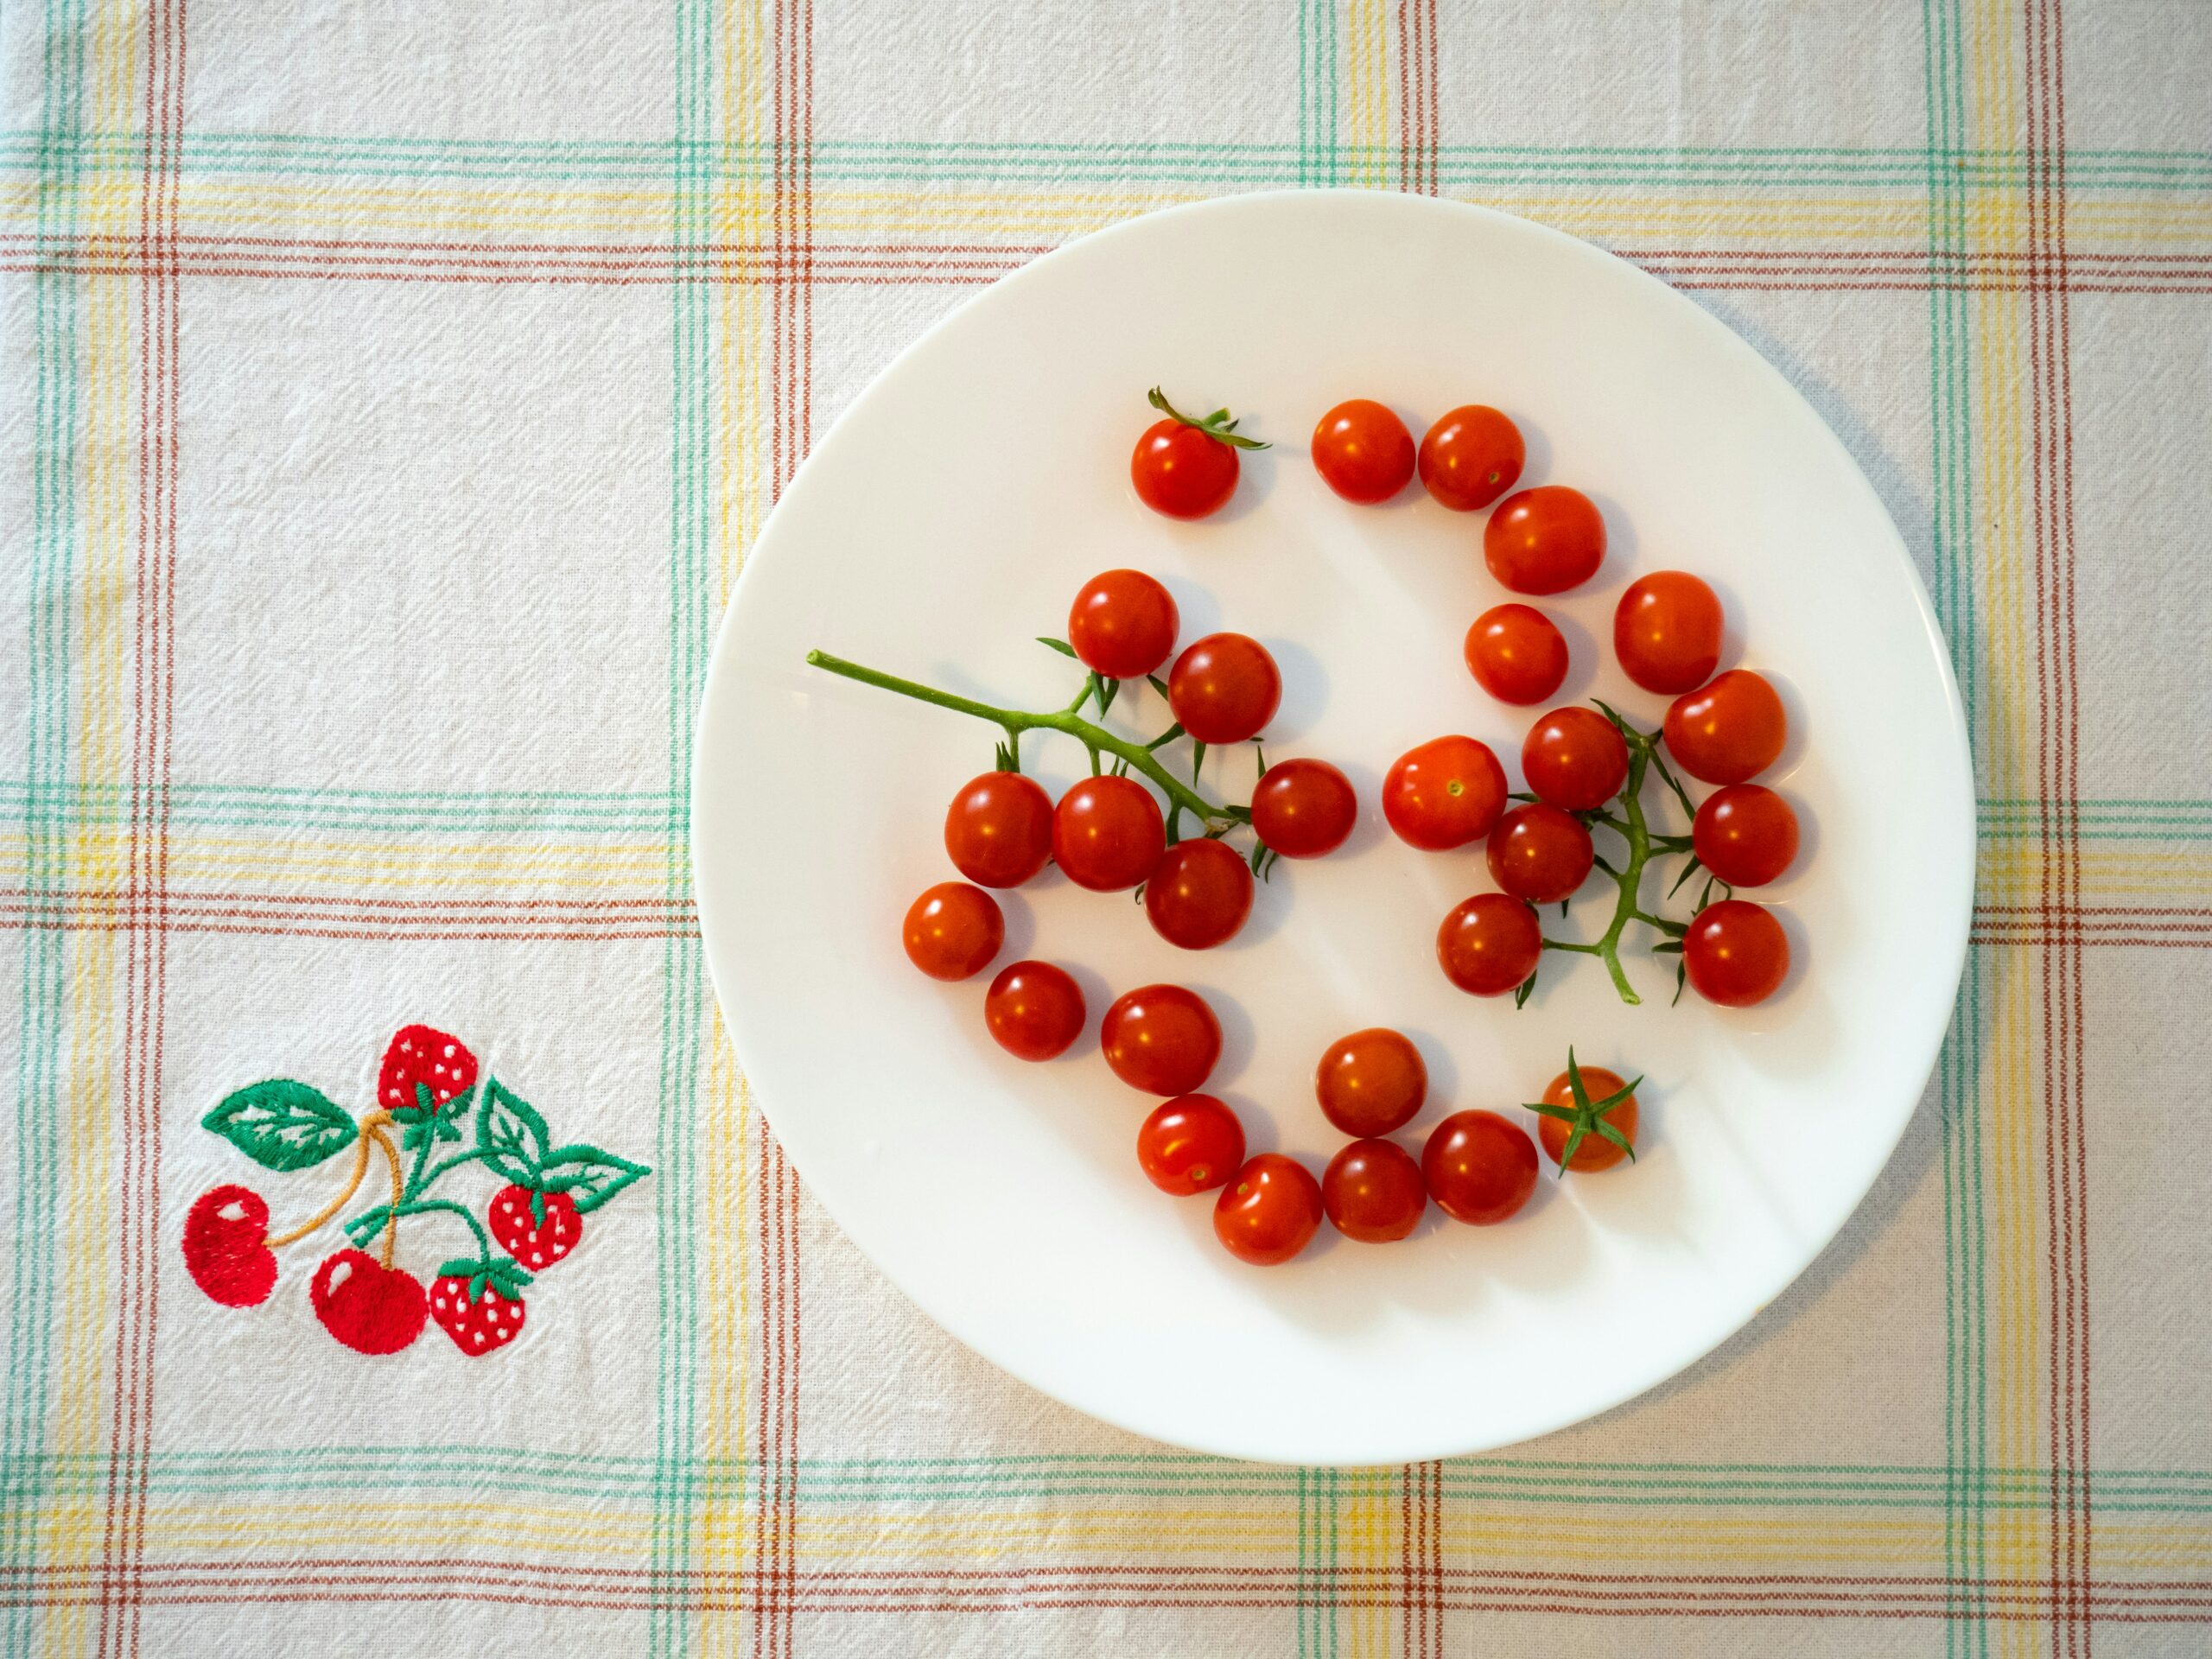 découvrez notre sélection de délicieuses tomates cerises, idéales pour agrémenter vos salades, plats et apéritifs.